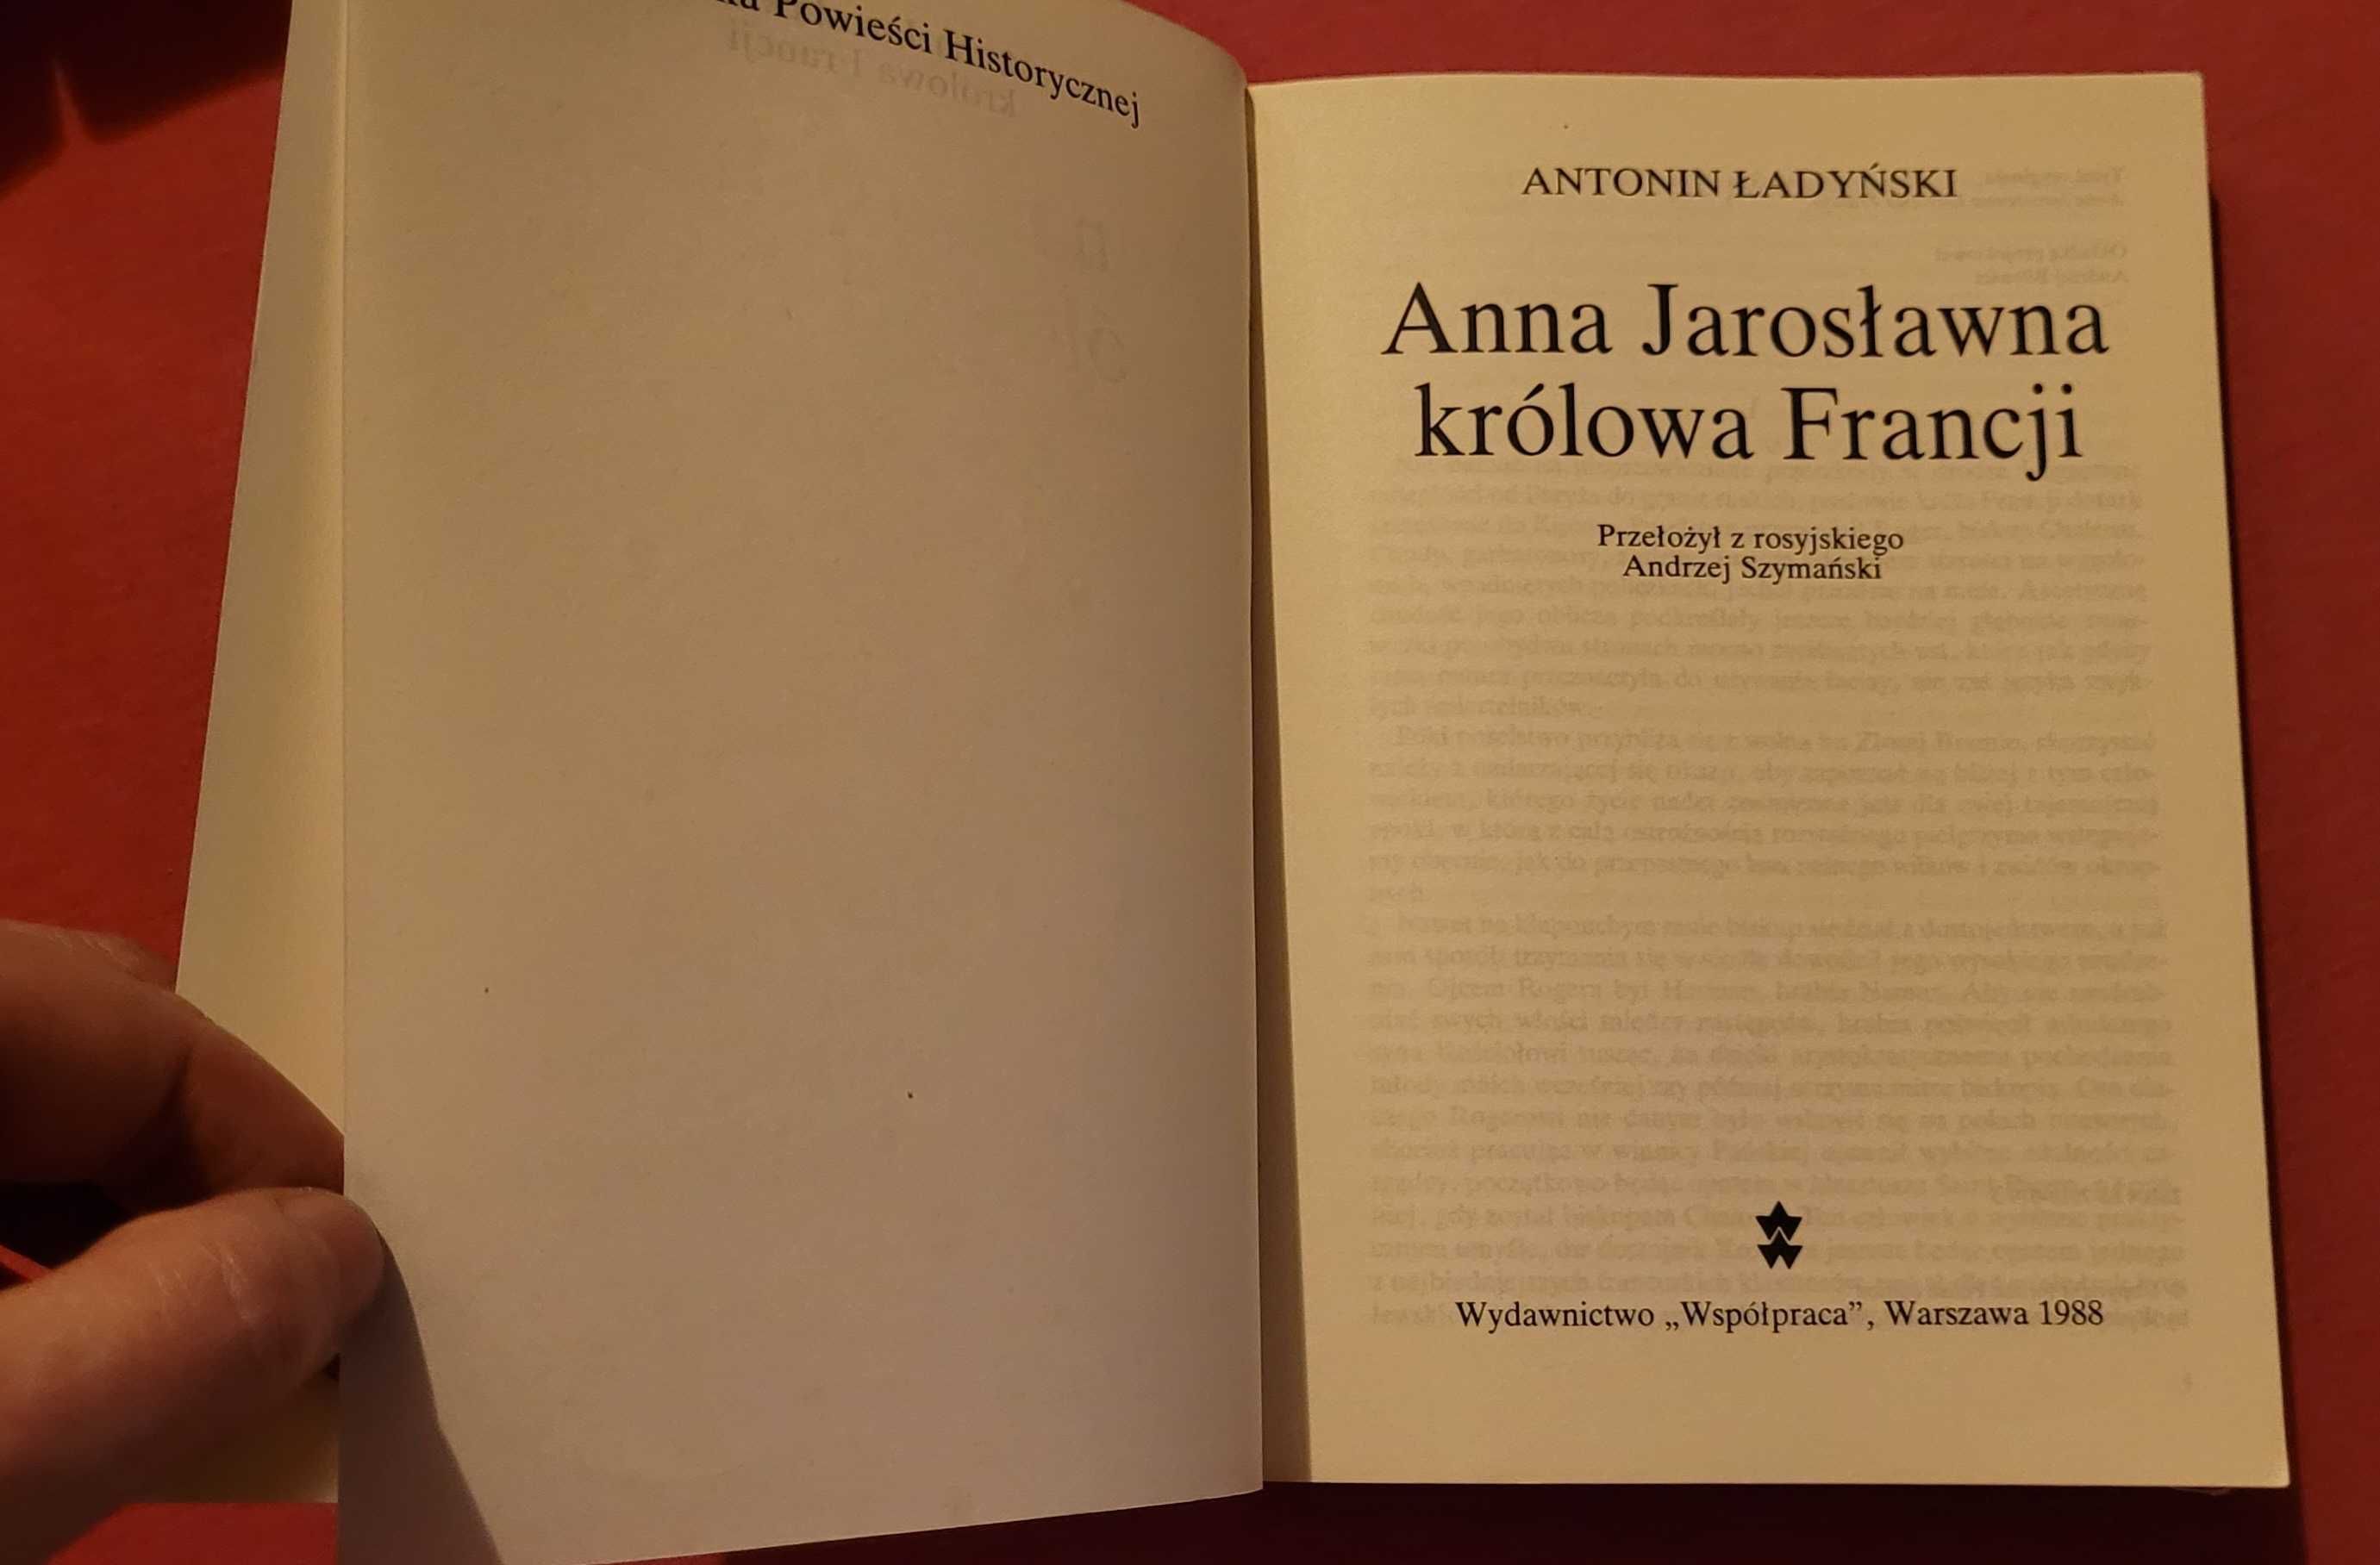 Powiesc "Krolowa Francji" autorstwa A.Jaroslawna , A.Ladynski